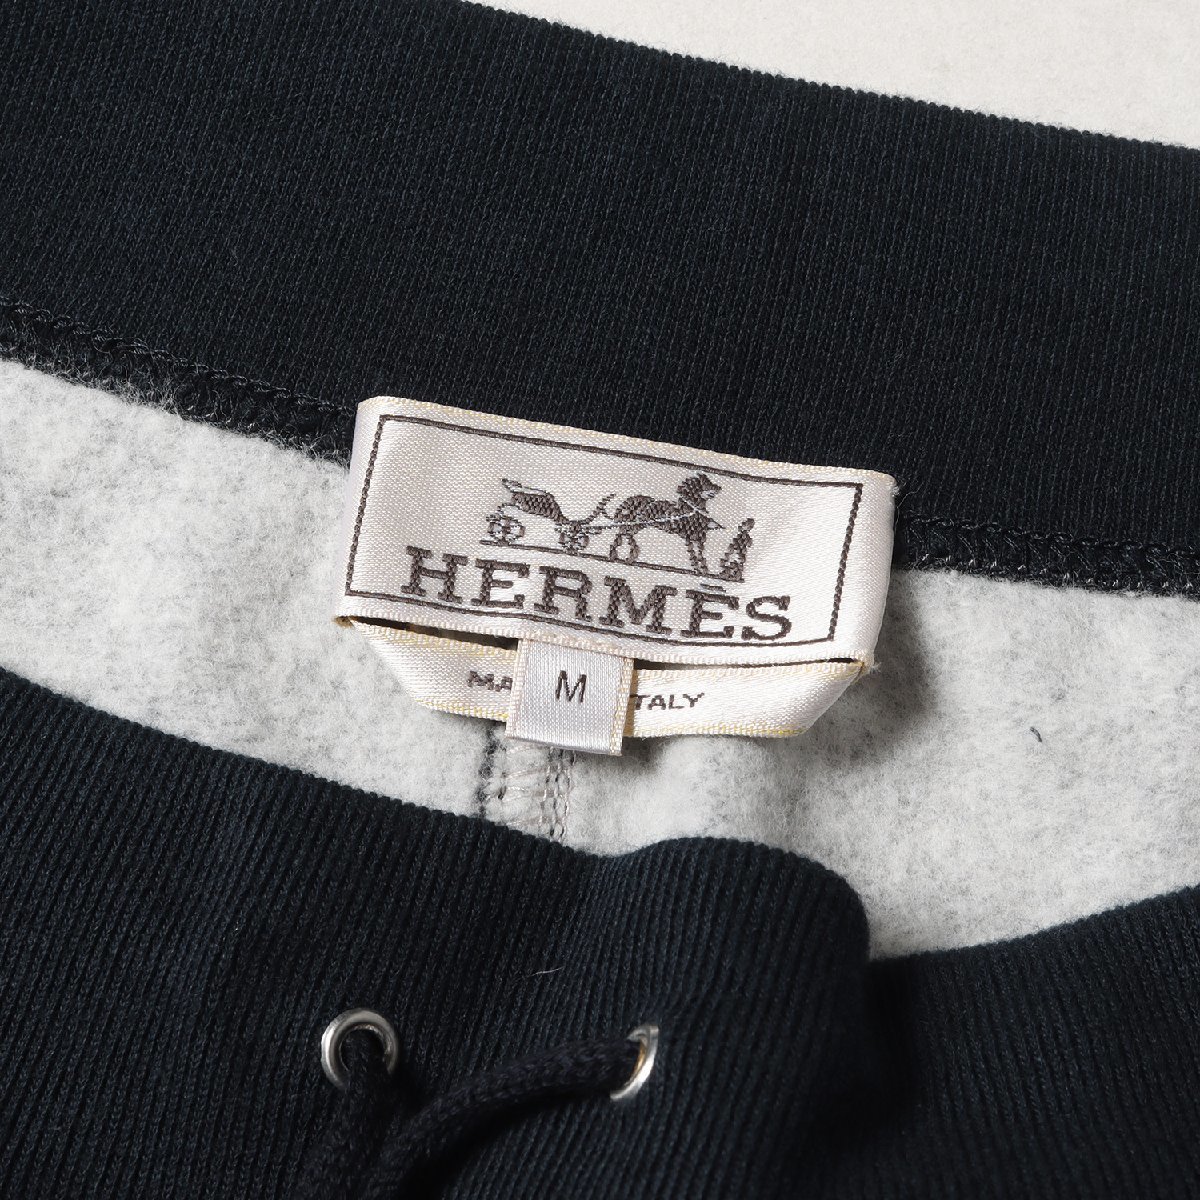 HERMES エルメス パンツ サイズ:M ツートーン スウェット ストレート イージーパンツ /裏起毛 グレー ネイビー イタリア製 ブランド_画像3